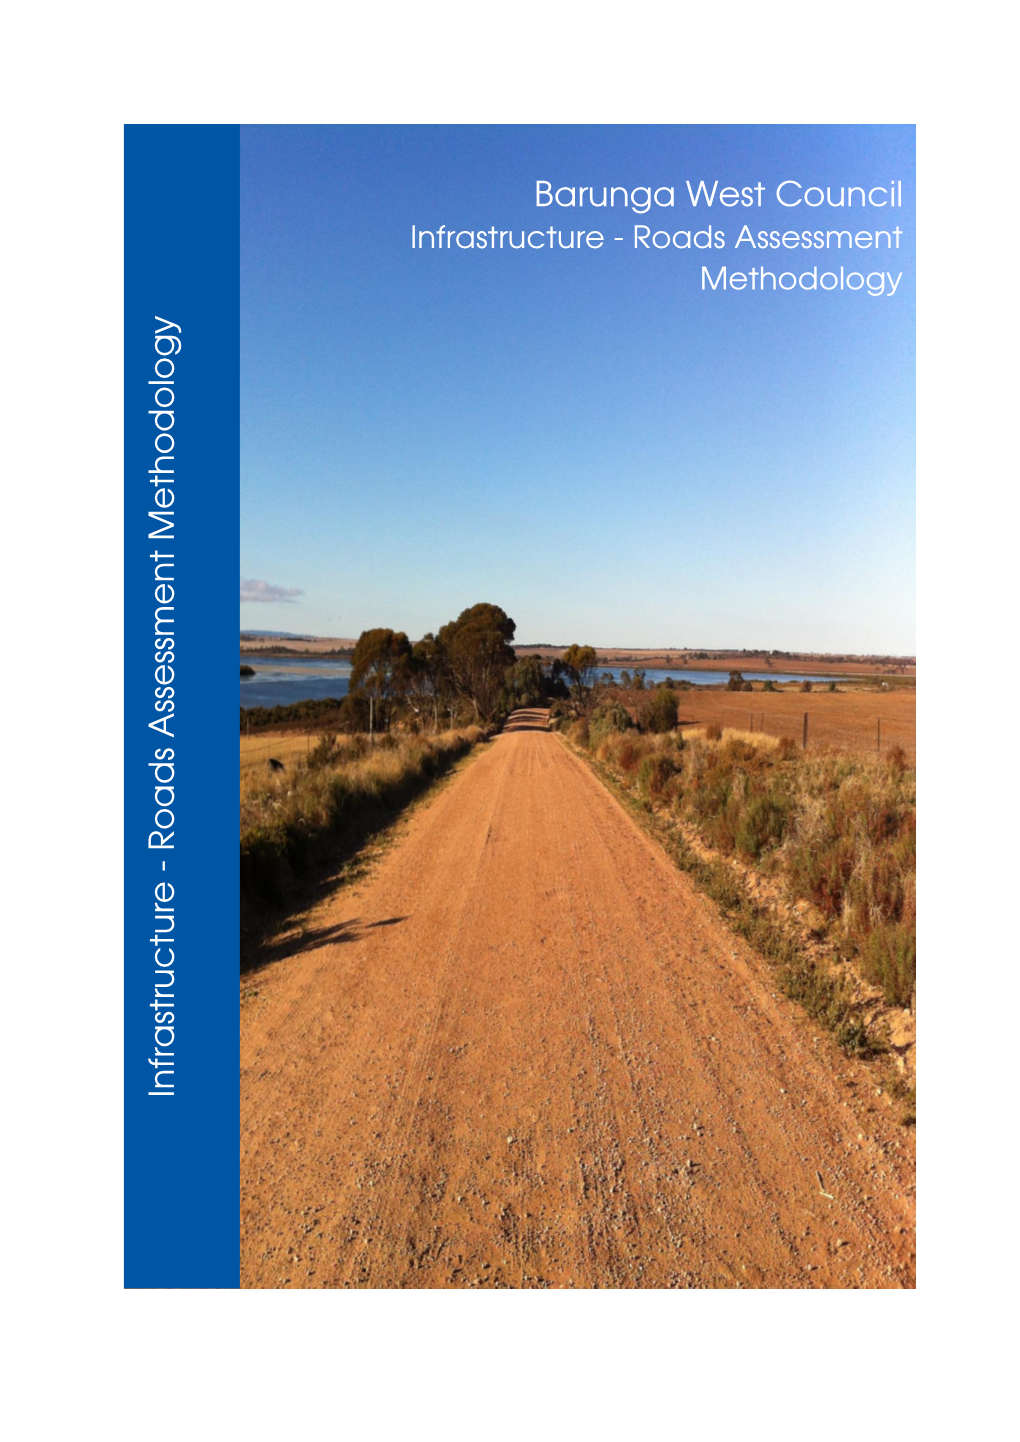 Road Methodology\Road Assessment Methodology Dcbw 18.07 - V4.Docx